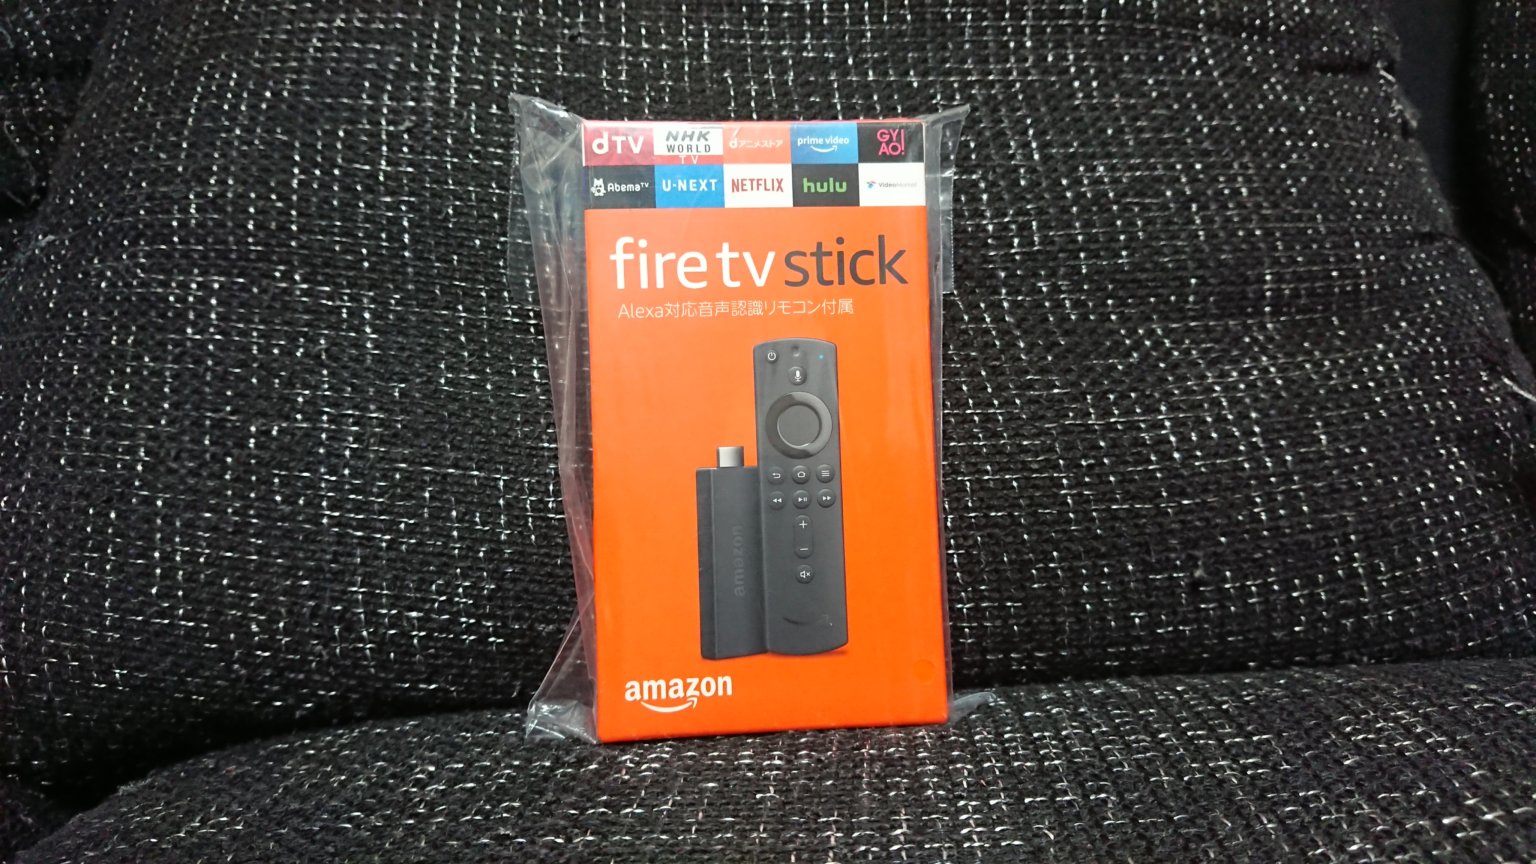 Amazon(アマゾン)のfireTVstick(ファイヤースティック) でアマゾンビデオやYOUTUBEを見る